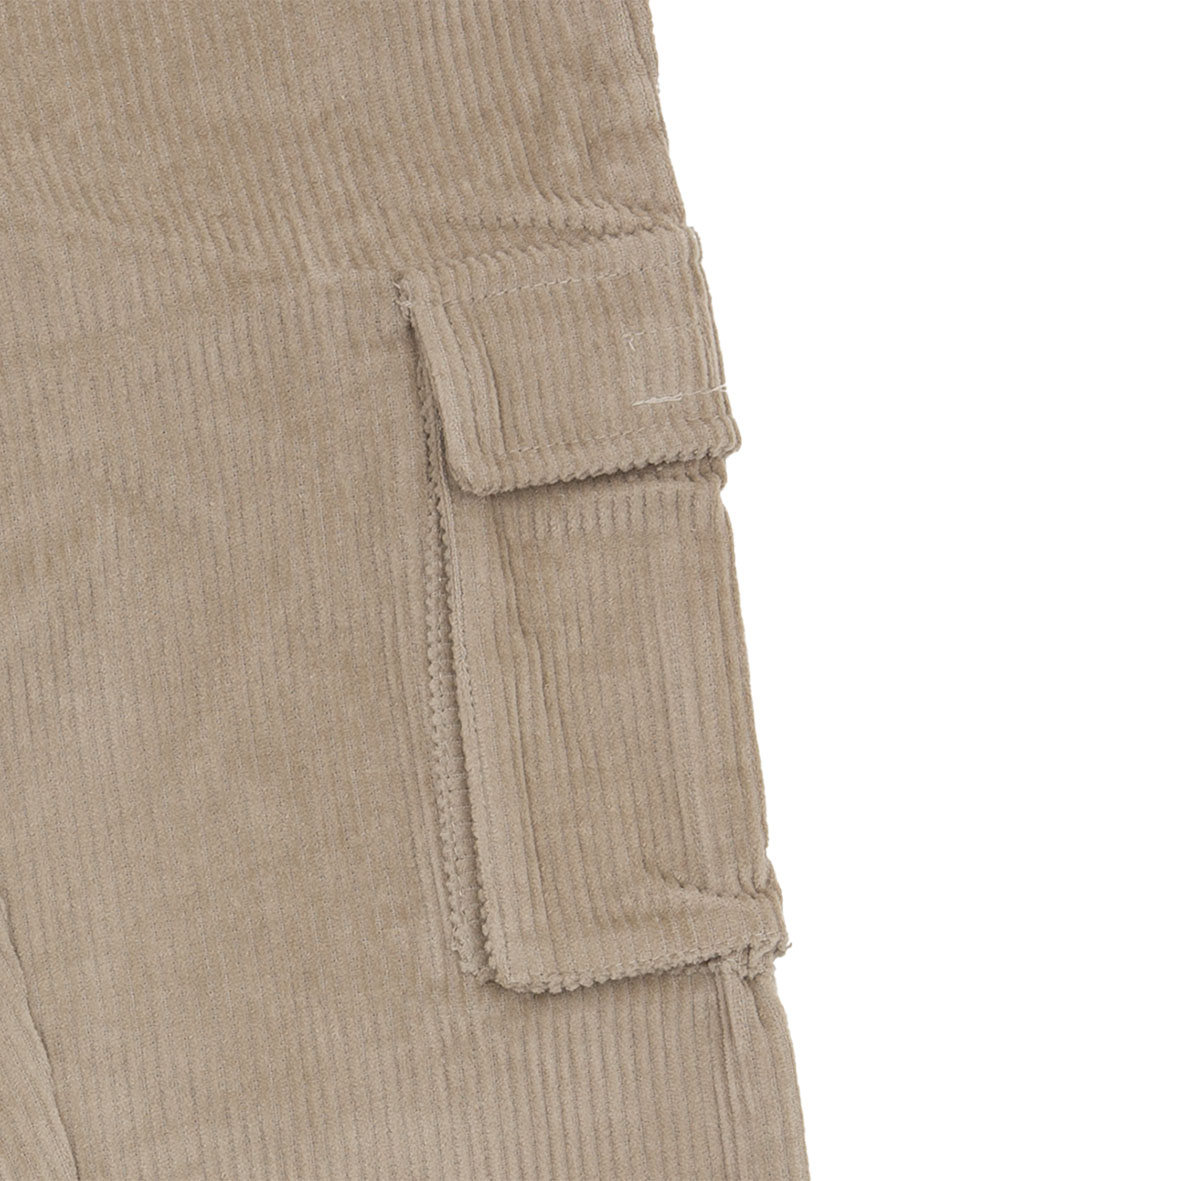 Mawi pantalone cargo velluto - Mawi